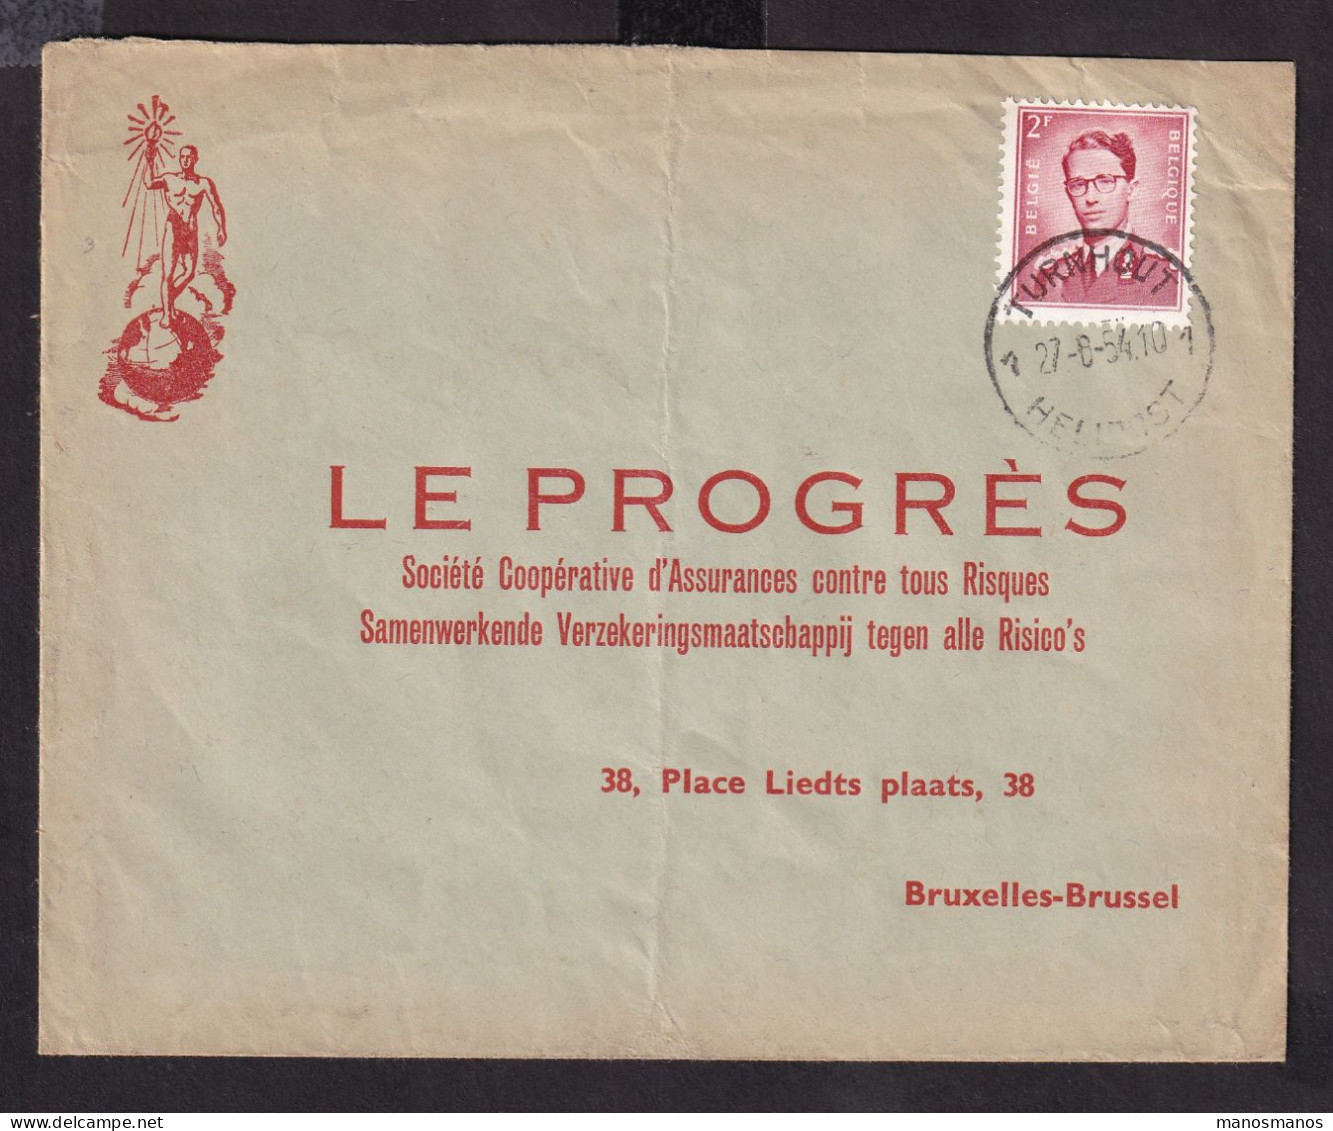 DDFF 848 --  Enveloppe Illustrée TP Baudouin Marchand TURNHOUT HELIPOST 1954 - Courrier Commercial Non Philatélique - Covers & Documents